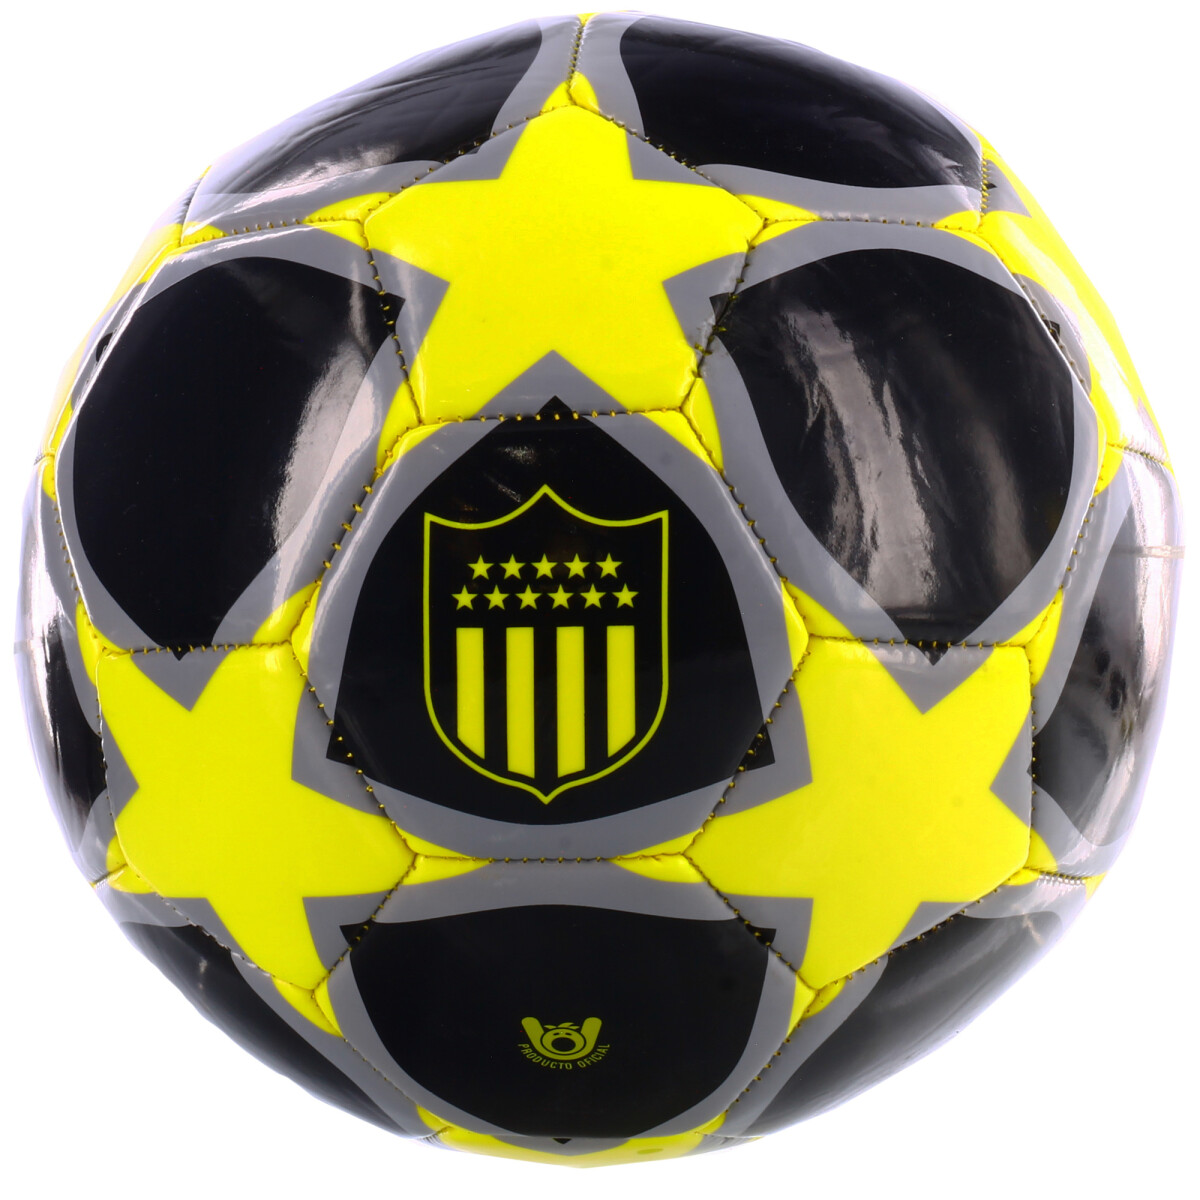 Pelota Peñarol Stars Peñarol - Negro/Amarillo/Gris 